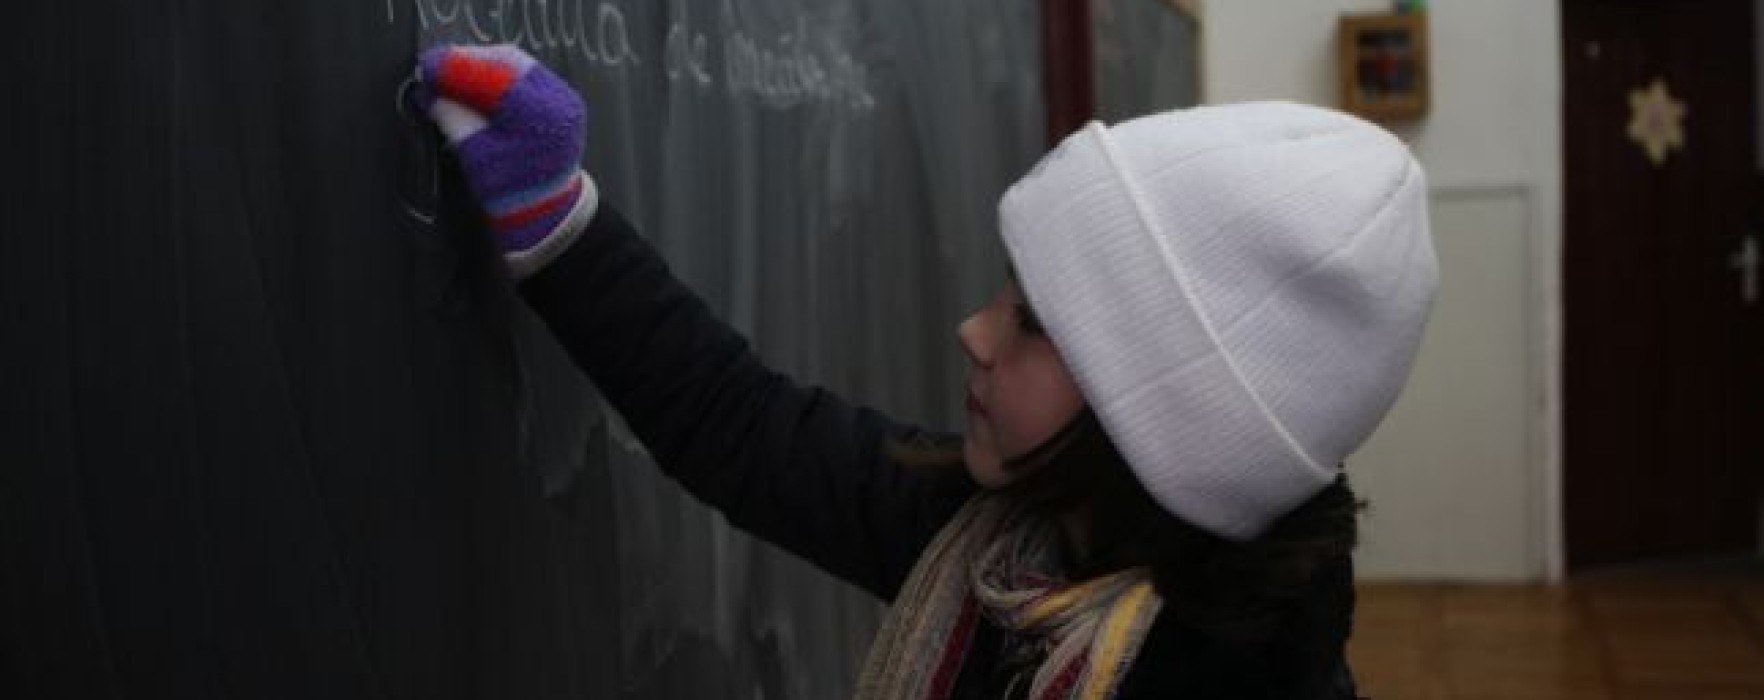 Ore de curs scurtate în şcolile fără căldură din Târgovişte